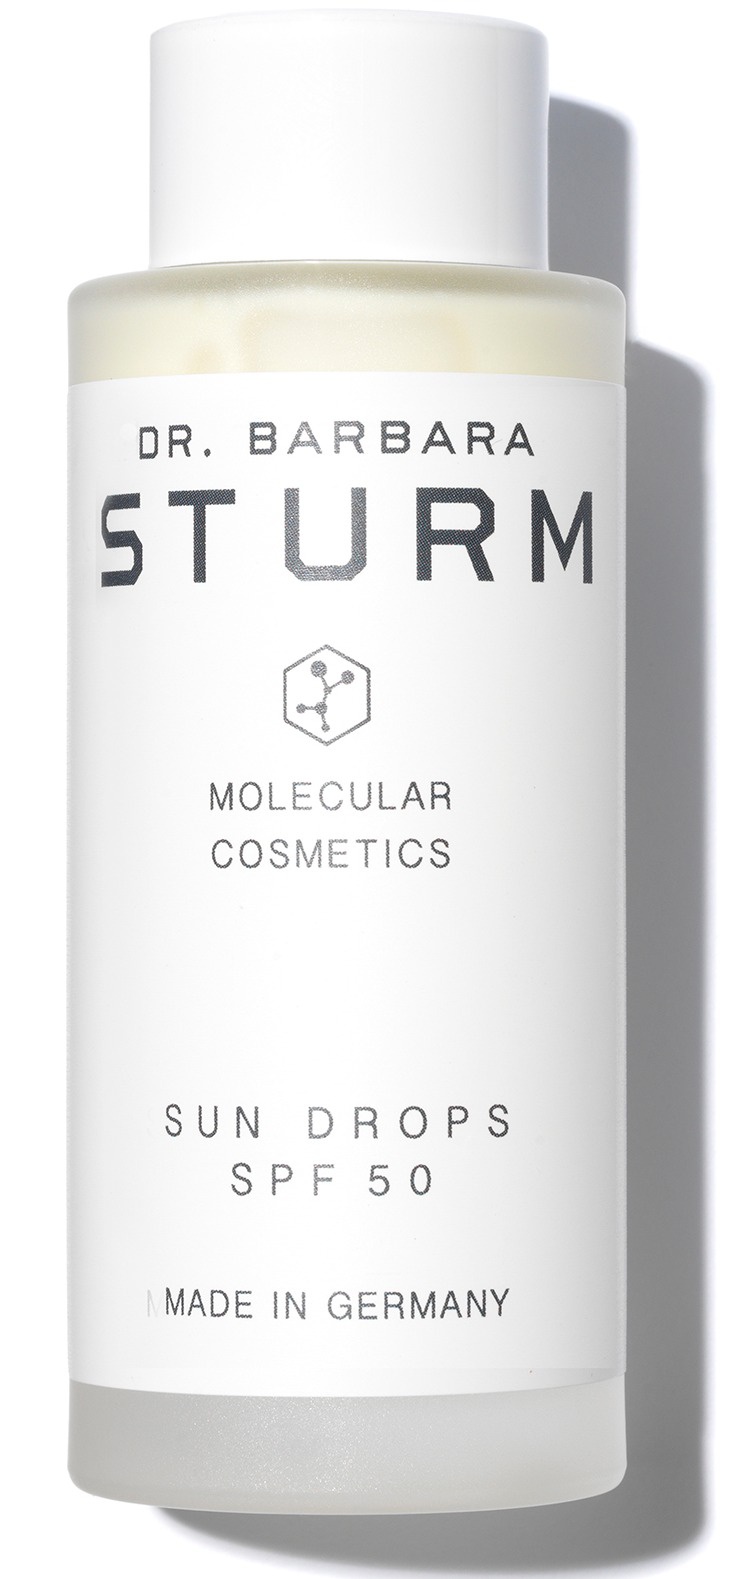 Dr. Barbara Stürm Sun Drops SPF 50 Us Formula